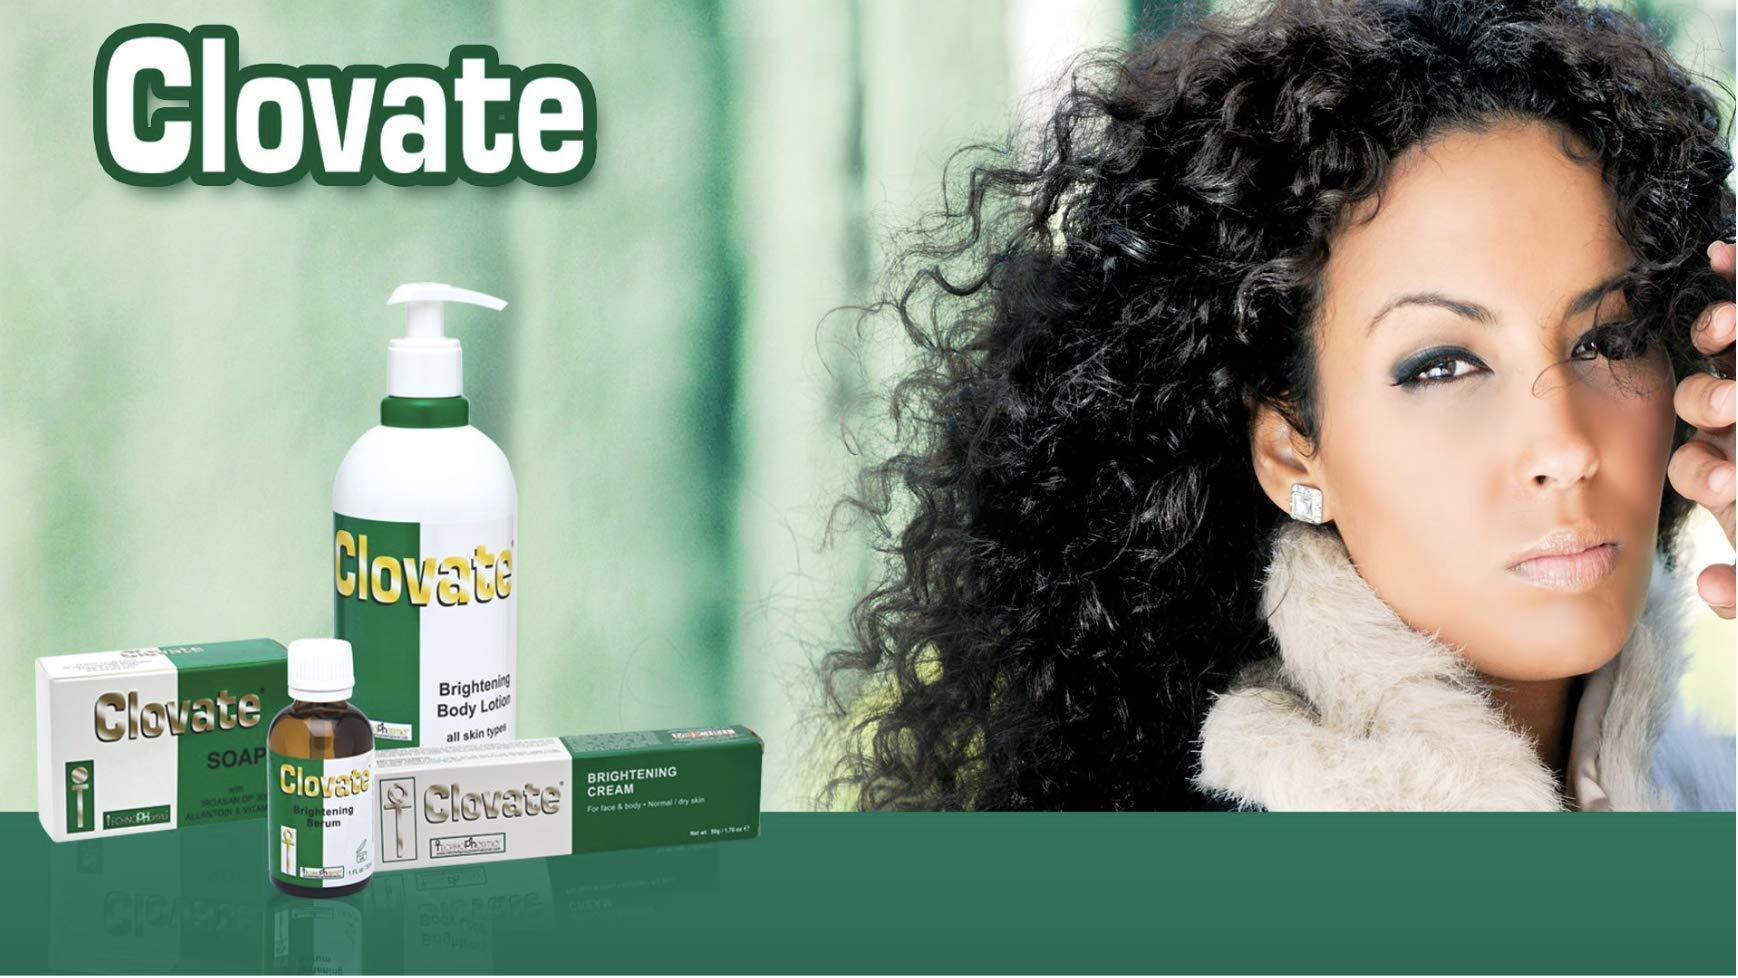 Clovate Beauty Soap 200g